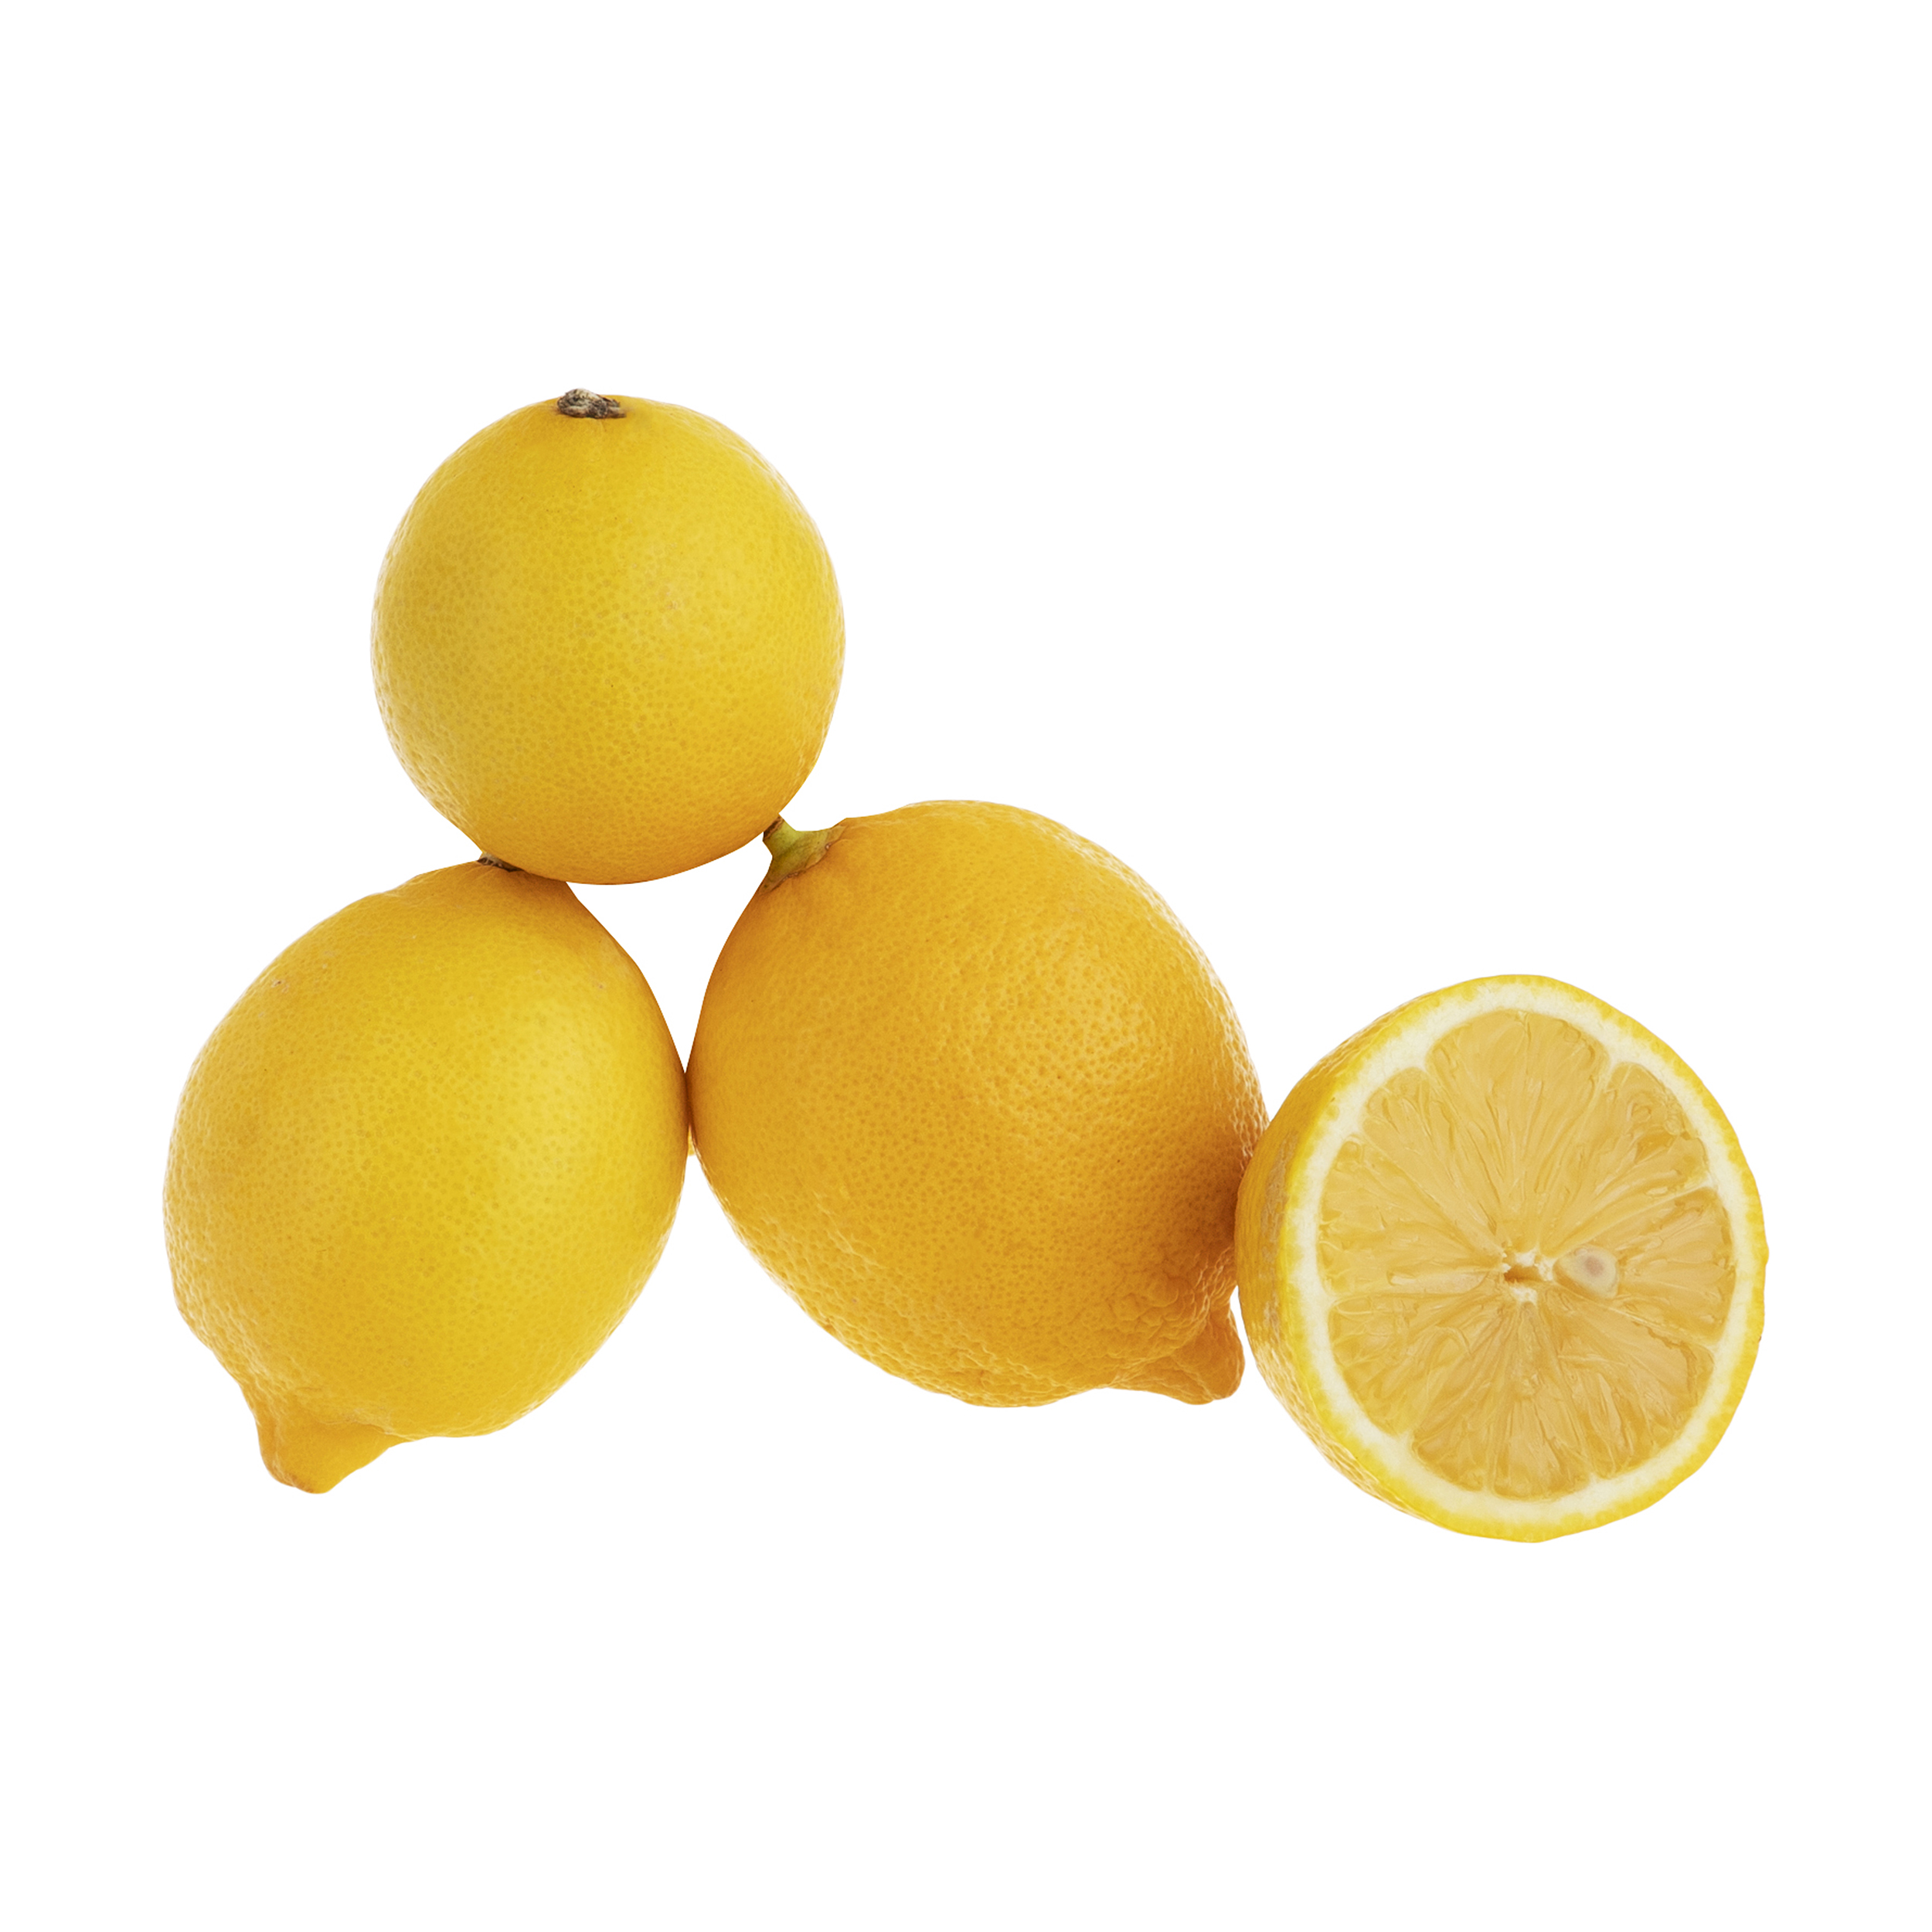 لیمو ترش بلوط - 1 کیلوگرم بسته بندی نایلونی 